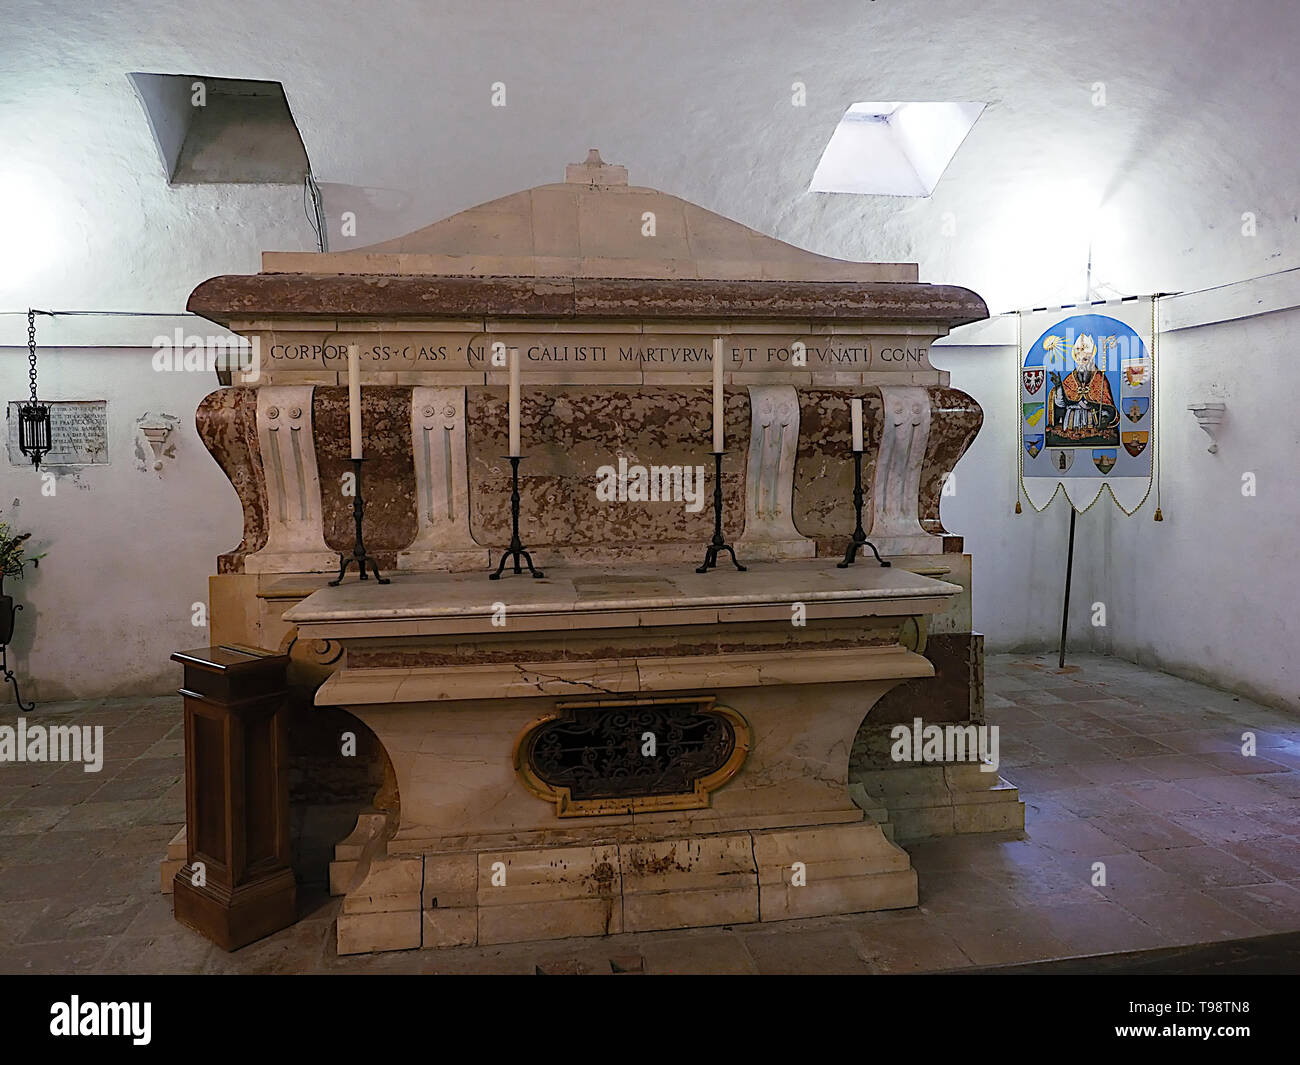 Todi Ombrie Italie. Église de San Fortunato, l'intérieur de la crypte. Sarcophage avec le reste des saints patrons de la ville Cassiano, Callist Banque D'Images